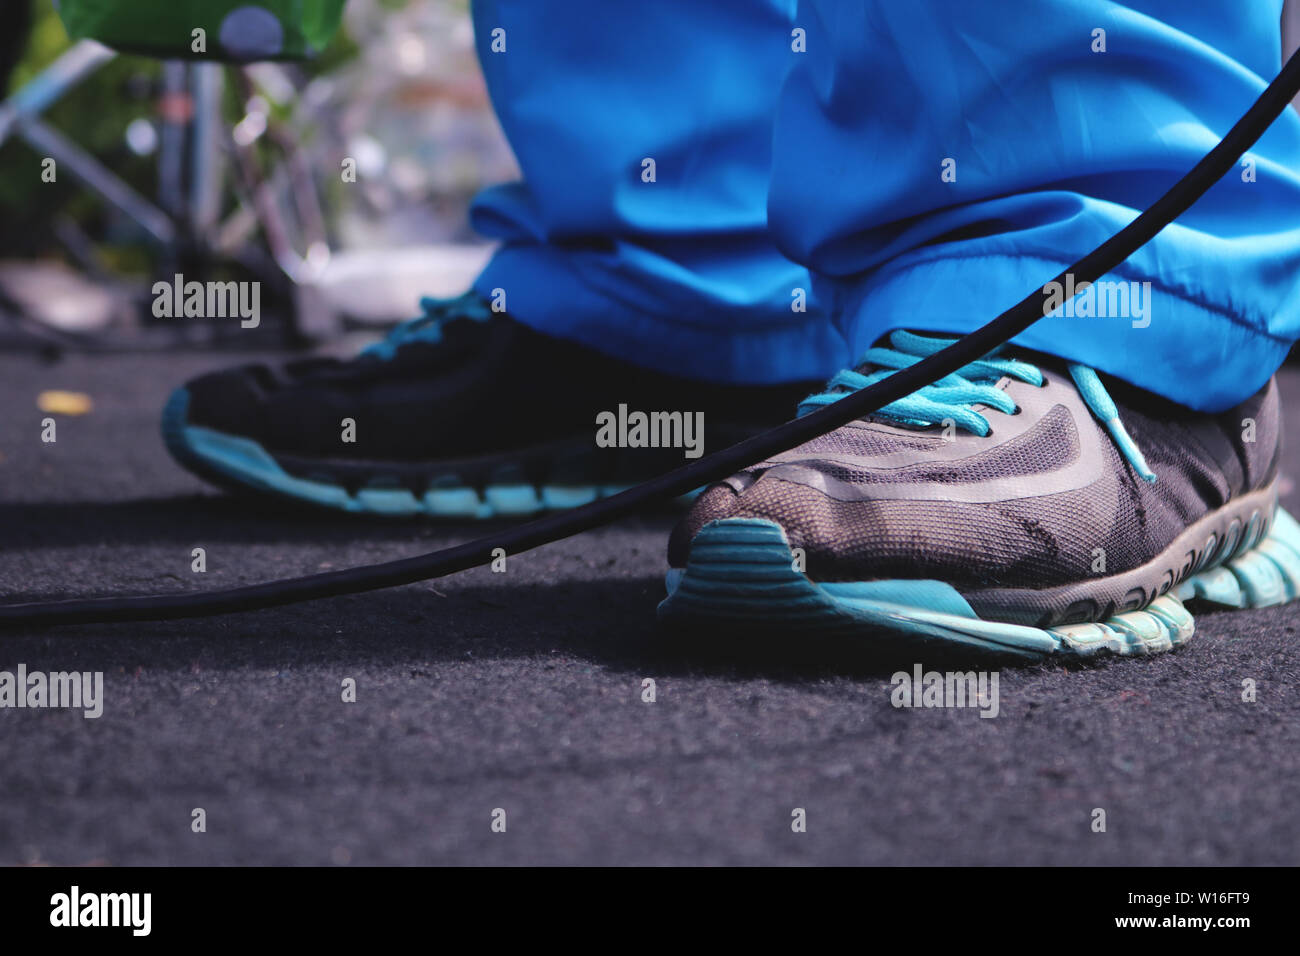 Blaue Schuhe auf einem schwarzen Teppich Verschleiß Stockfoto